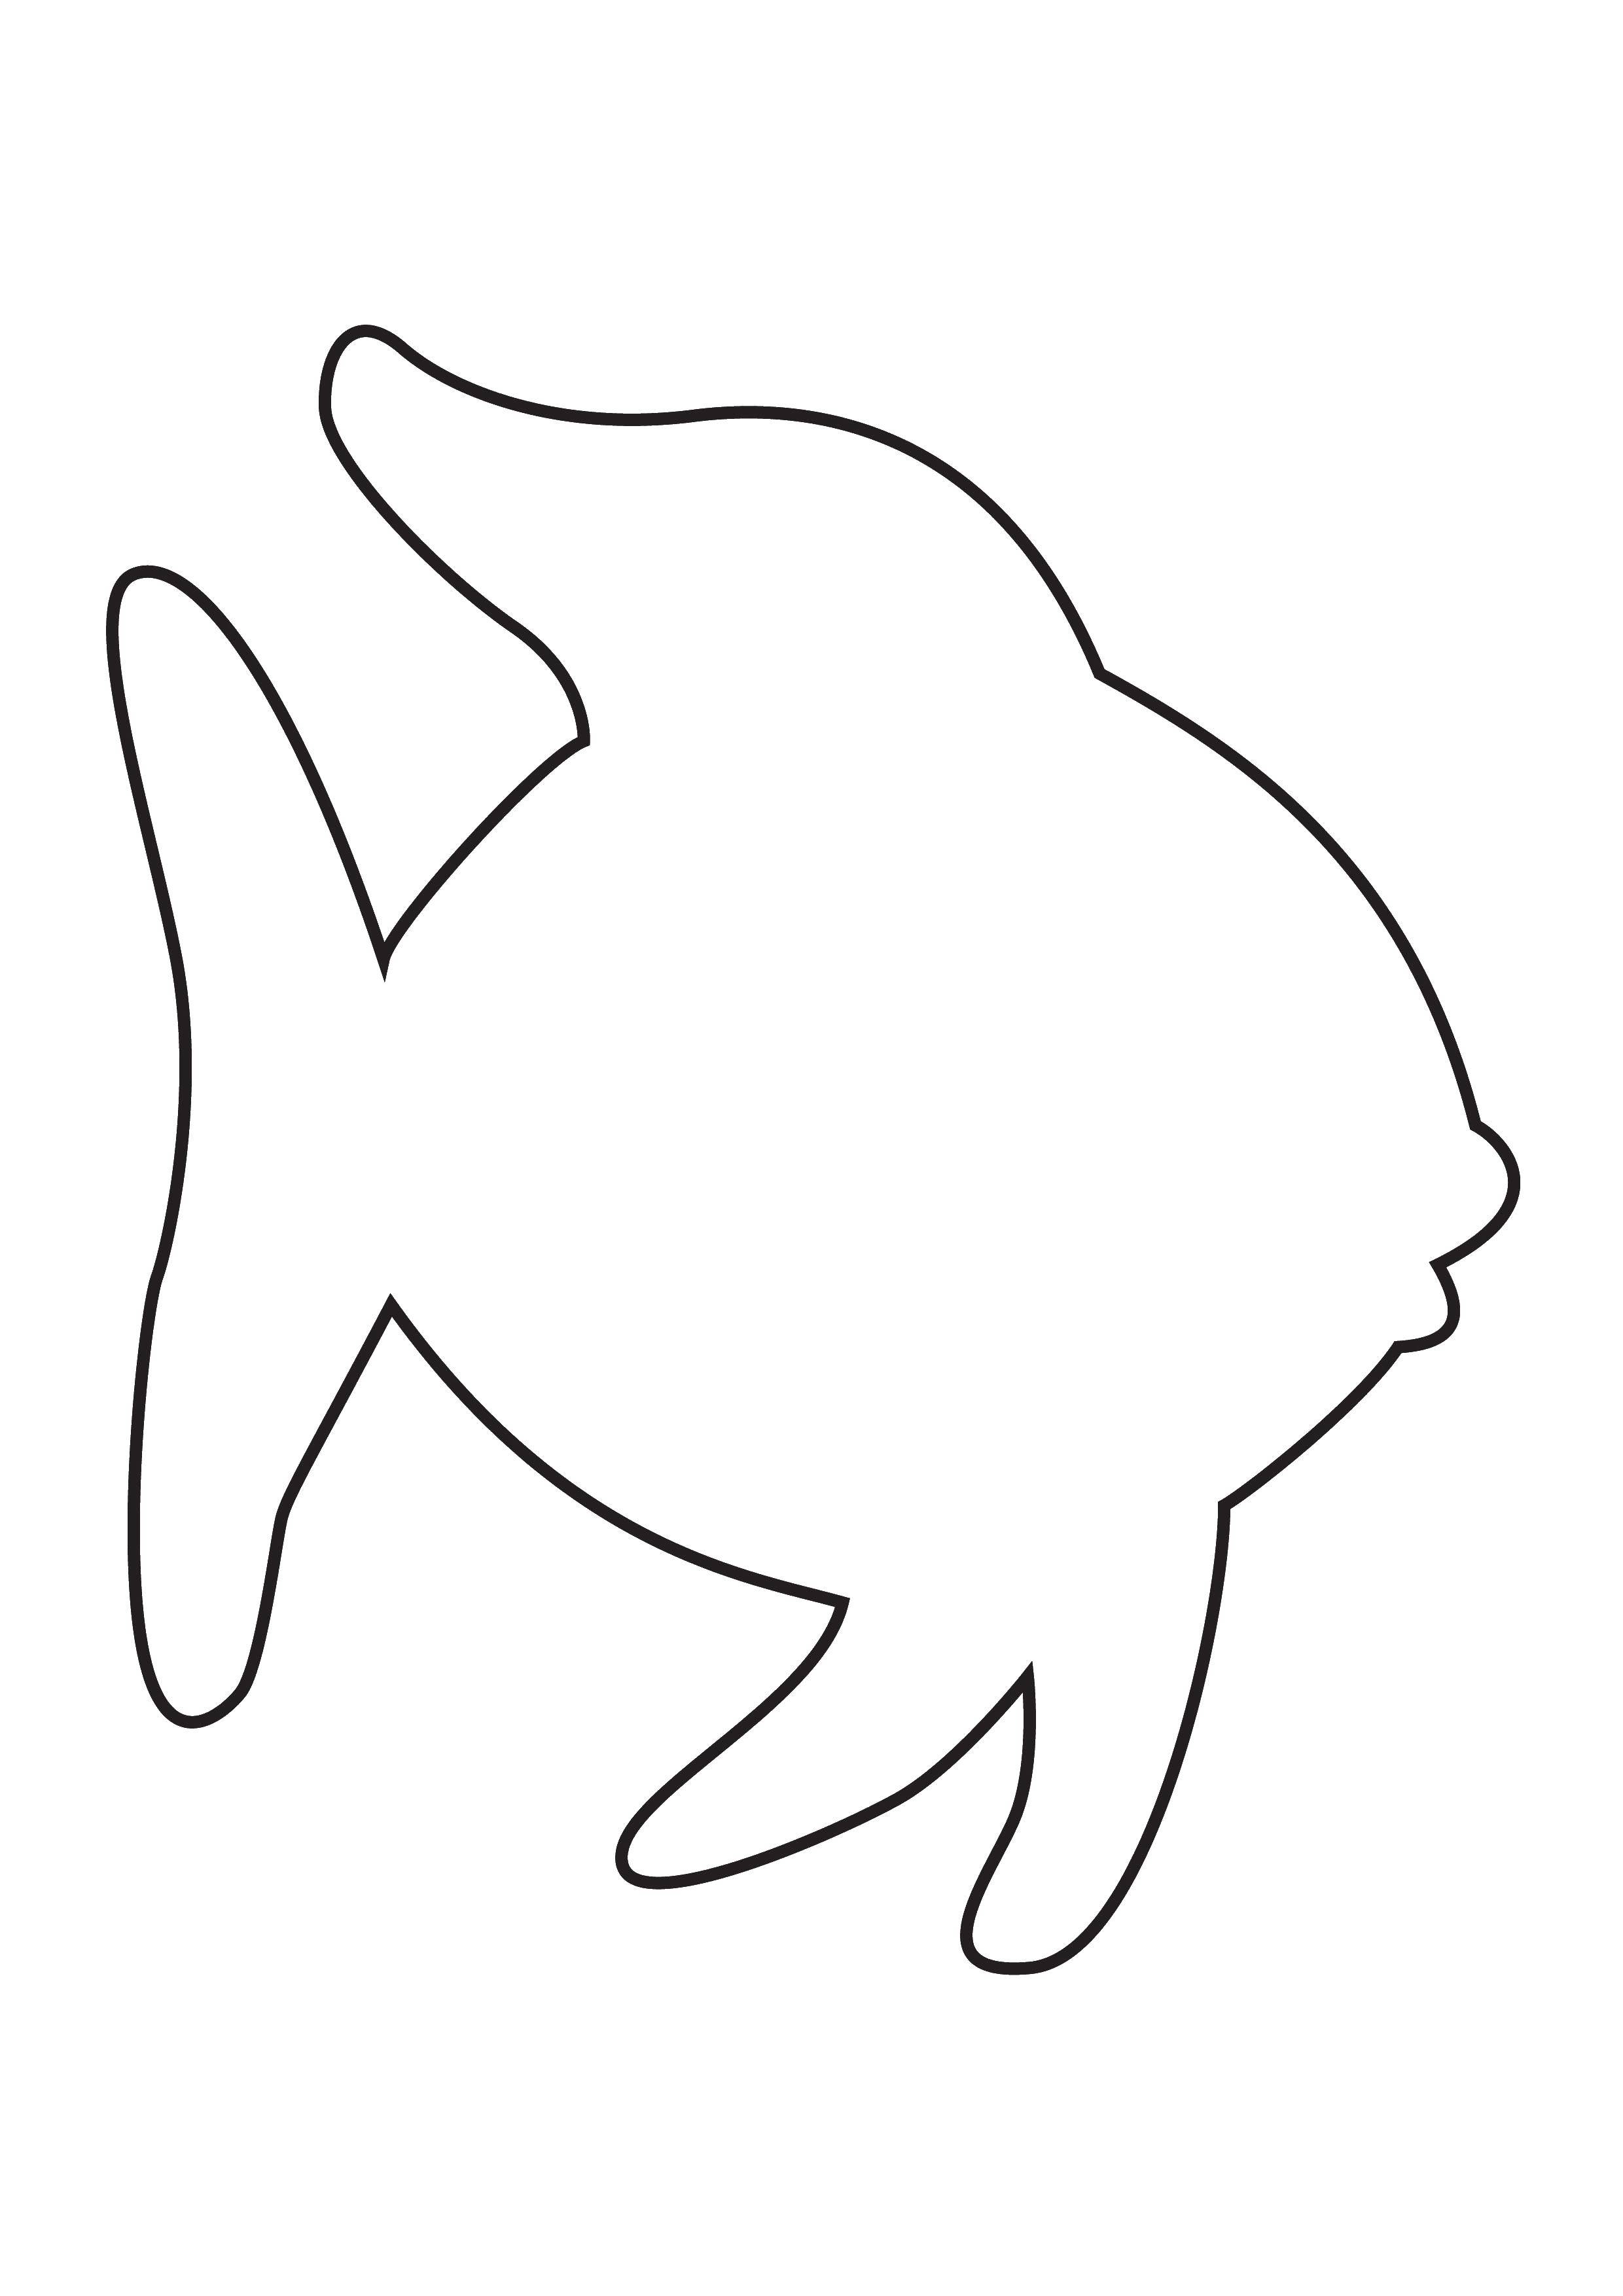 Название: Раскраска Контур рыбки. Категория: Контуры рыбы для вырезания. Теги: контуры, рыбка, для вырезания.